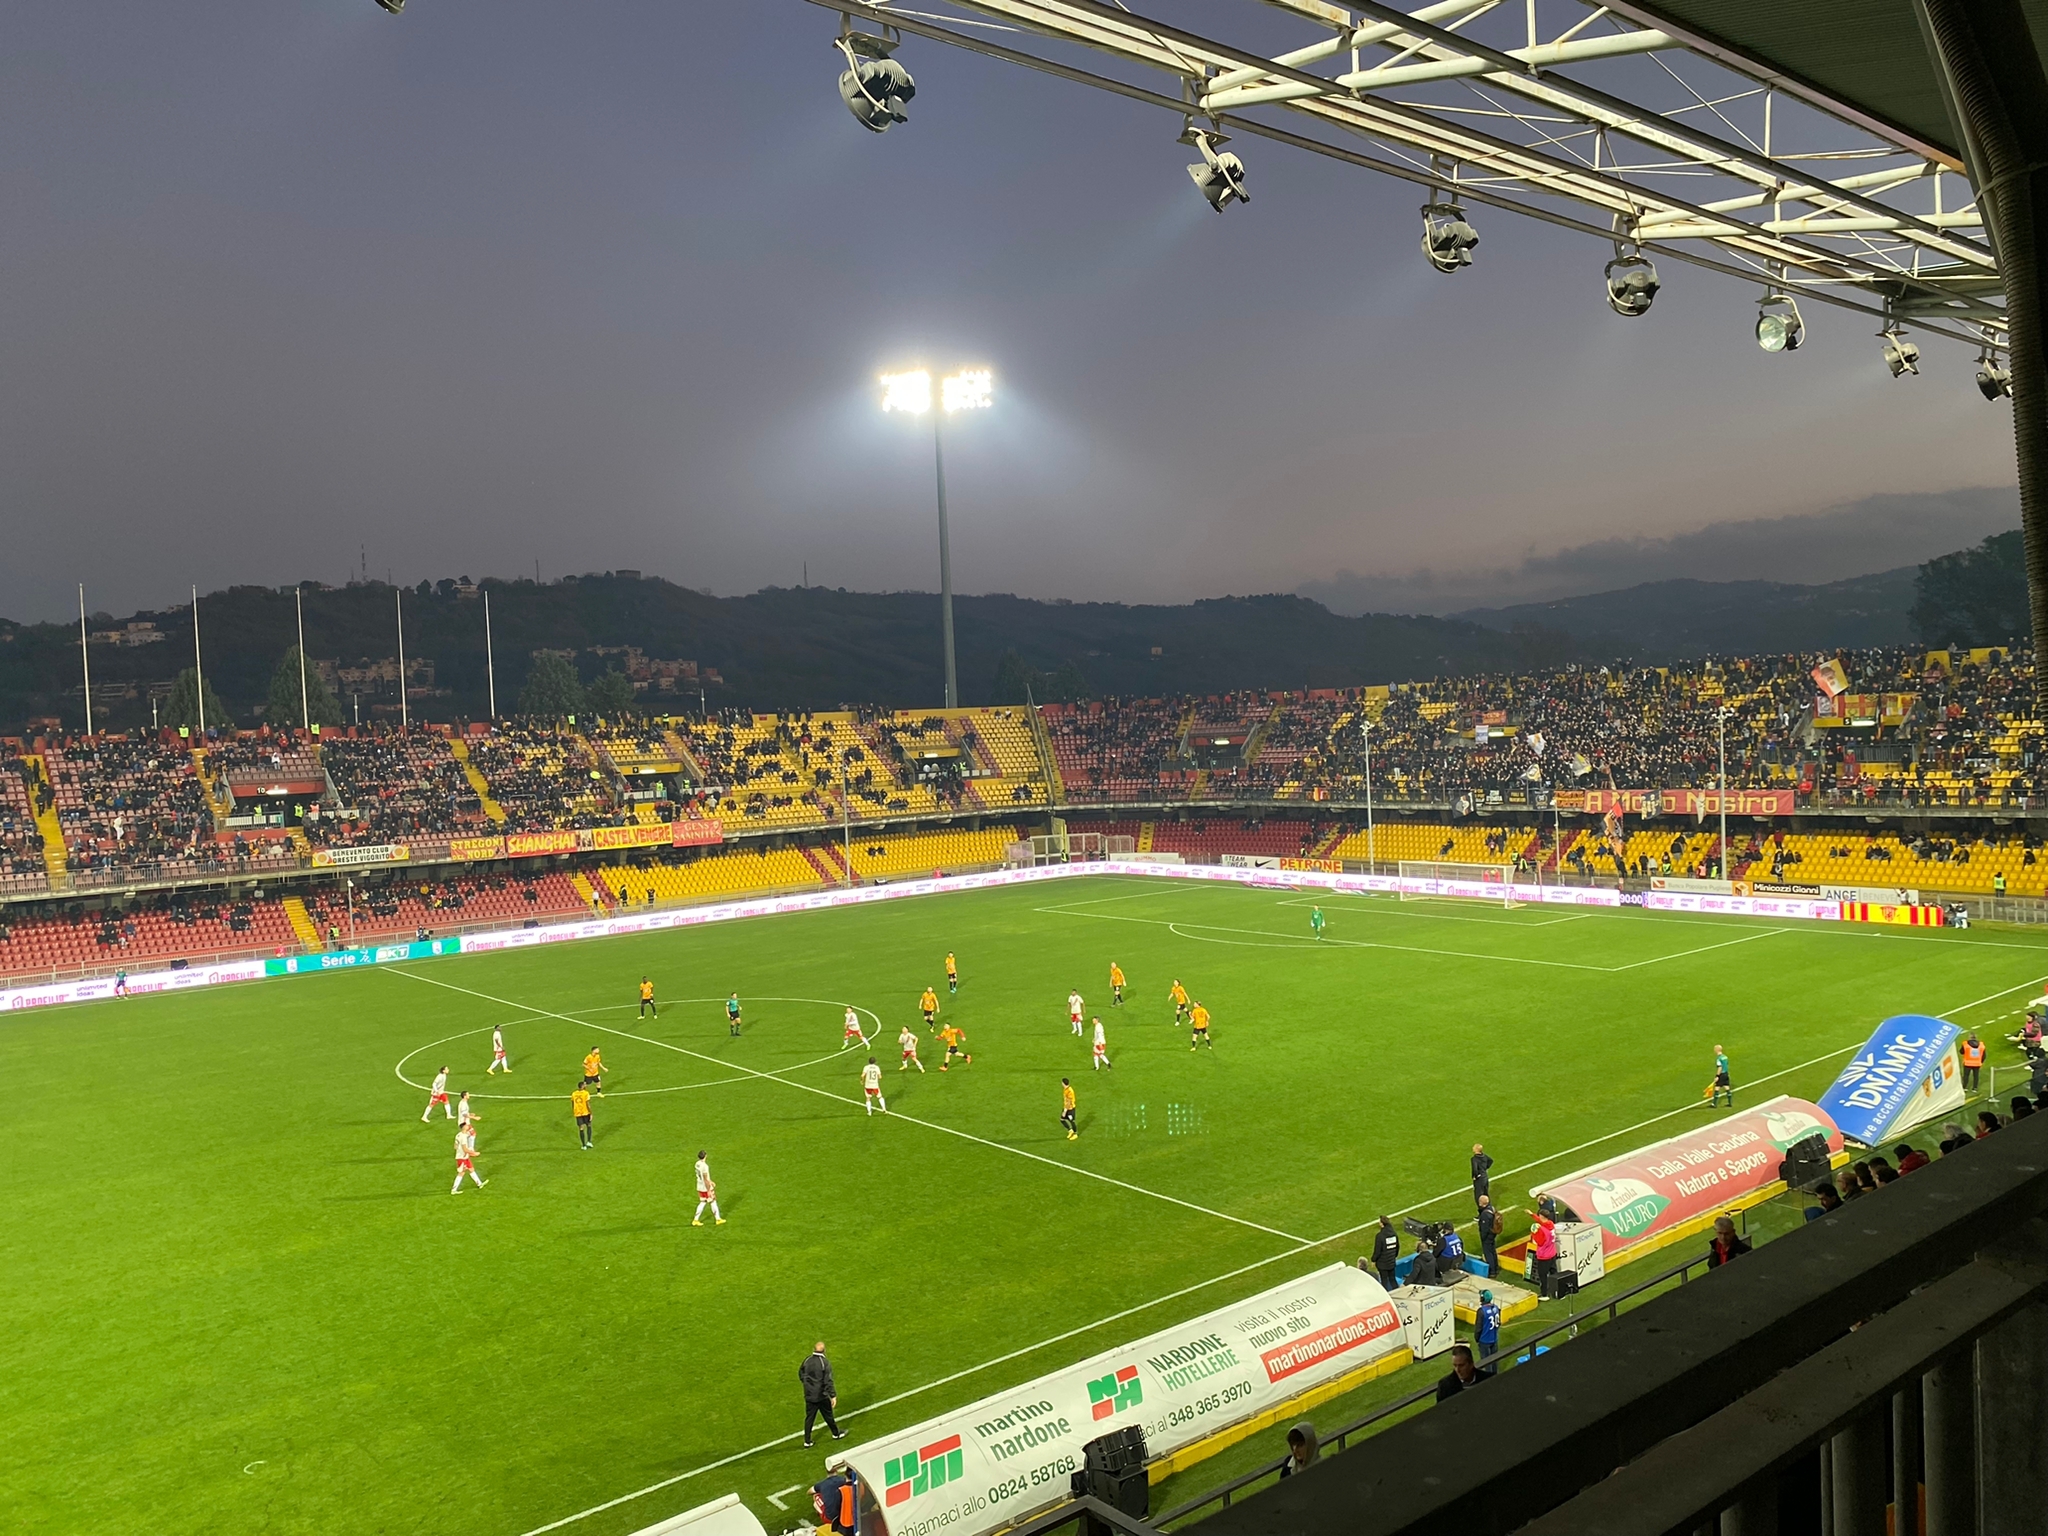 Benevento-Perugia: 0-2. “Vigorito” ancora espugnato, nuovo crollo giallorosso